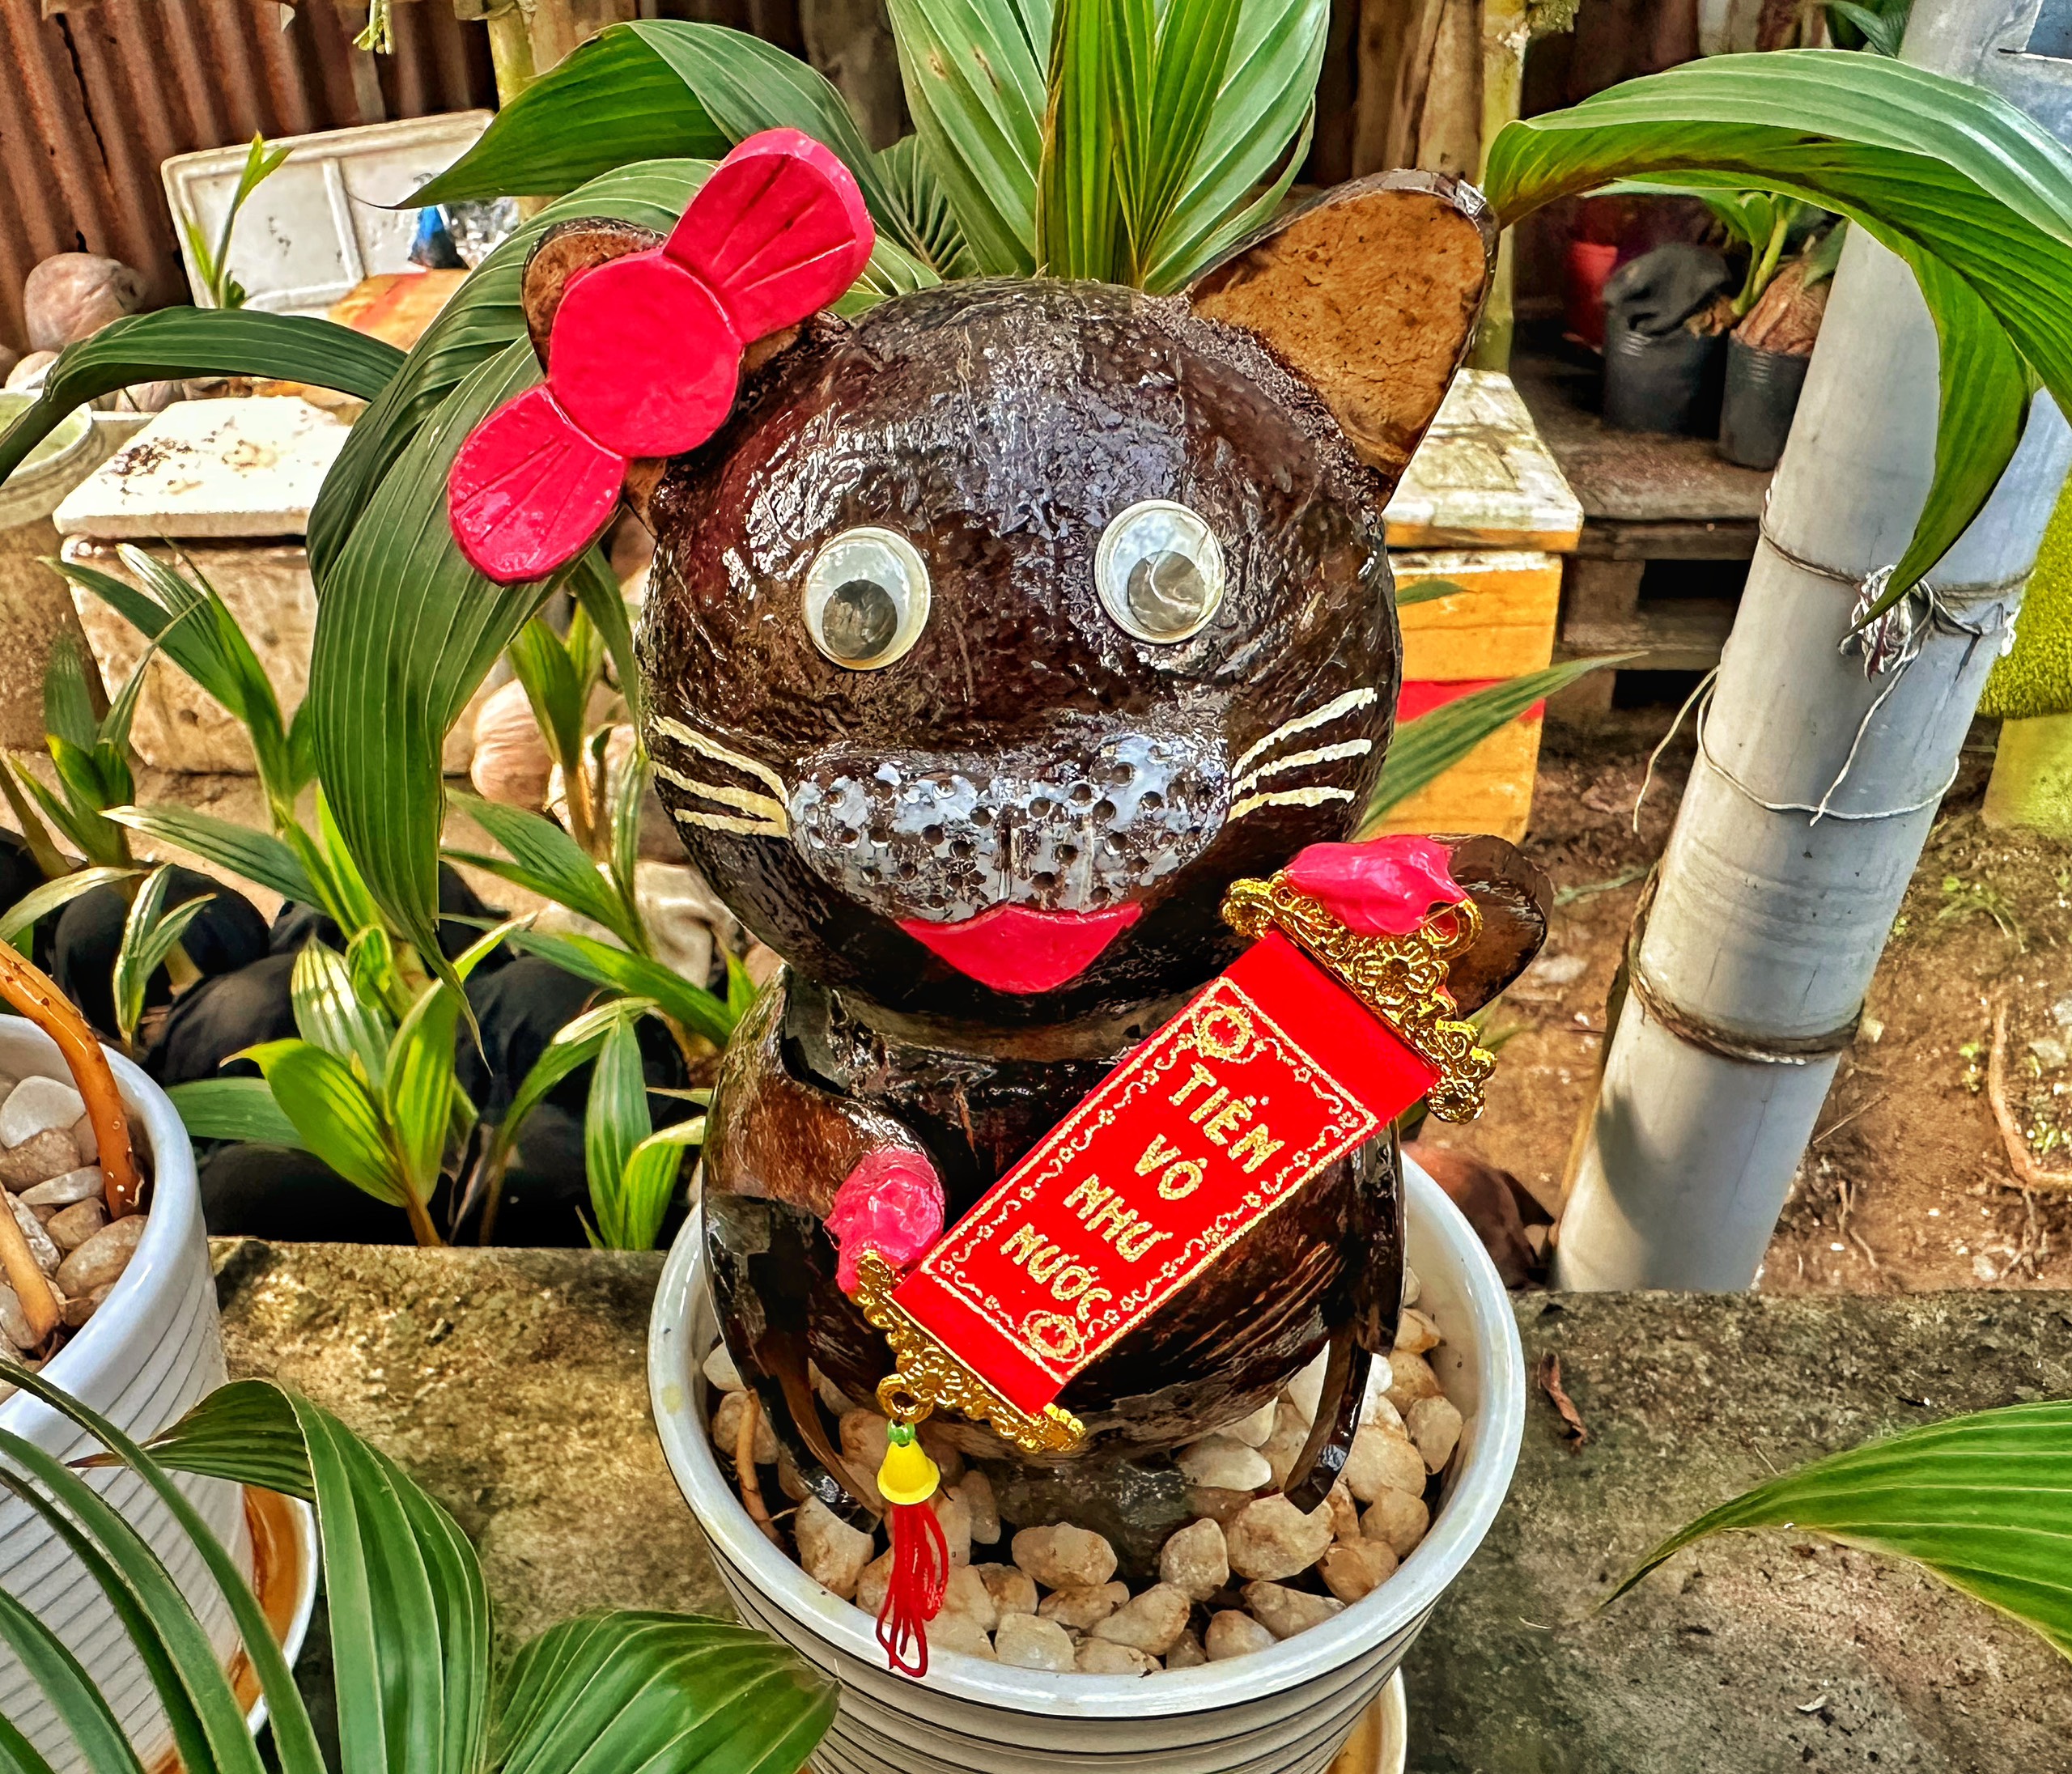 Bạn đã từng nghe đến những cây dừa bonsai độc đáo chưa? Và còn có một con mèo tuyệt đẹp cũng sẽ khiến bạn bất ngờ đấy. Mở ngay hình ảnh này để khám phá thế giới độc đáo của cây dừa bonsai và con mèo đầy cuốn hút!